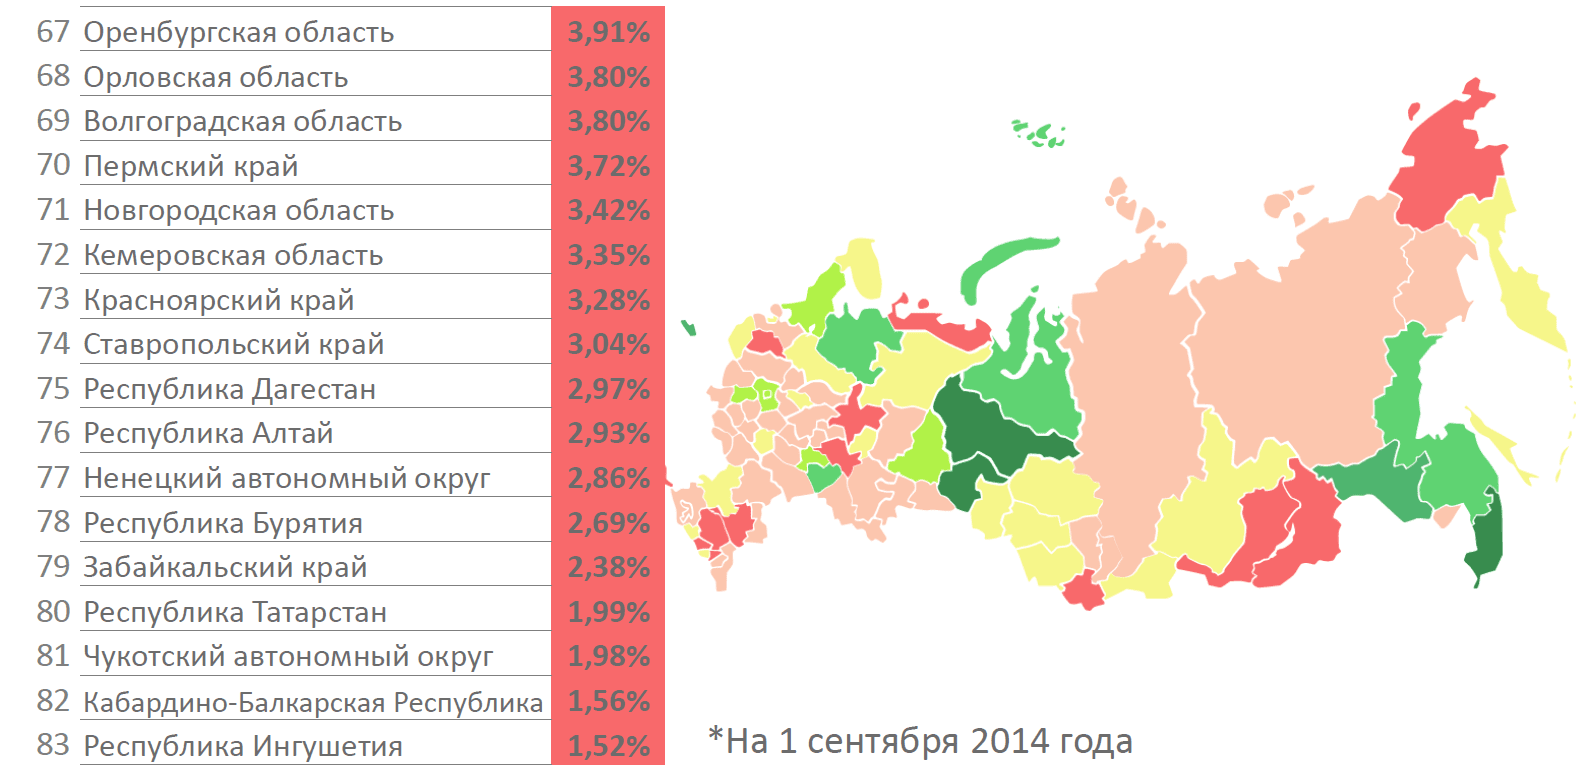 Средний IQ по регионам России. IQ населения России по регионам. Уровень IQ по регионам РФ. Регионы России по среднему IQ.